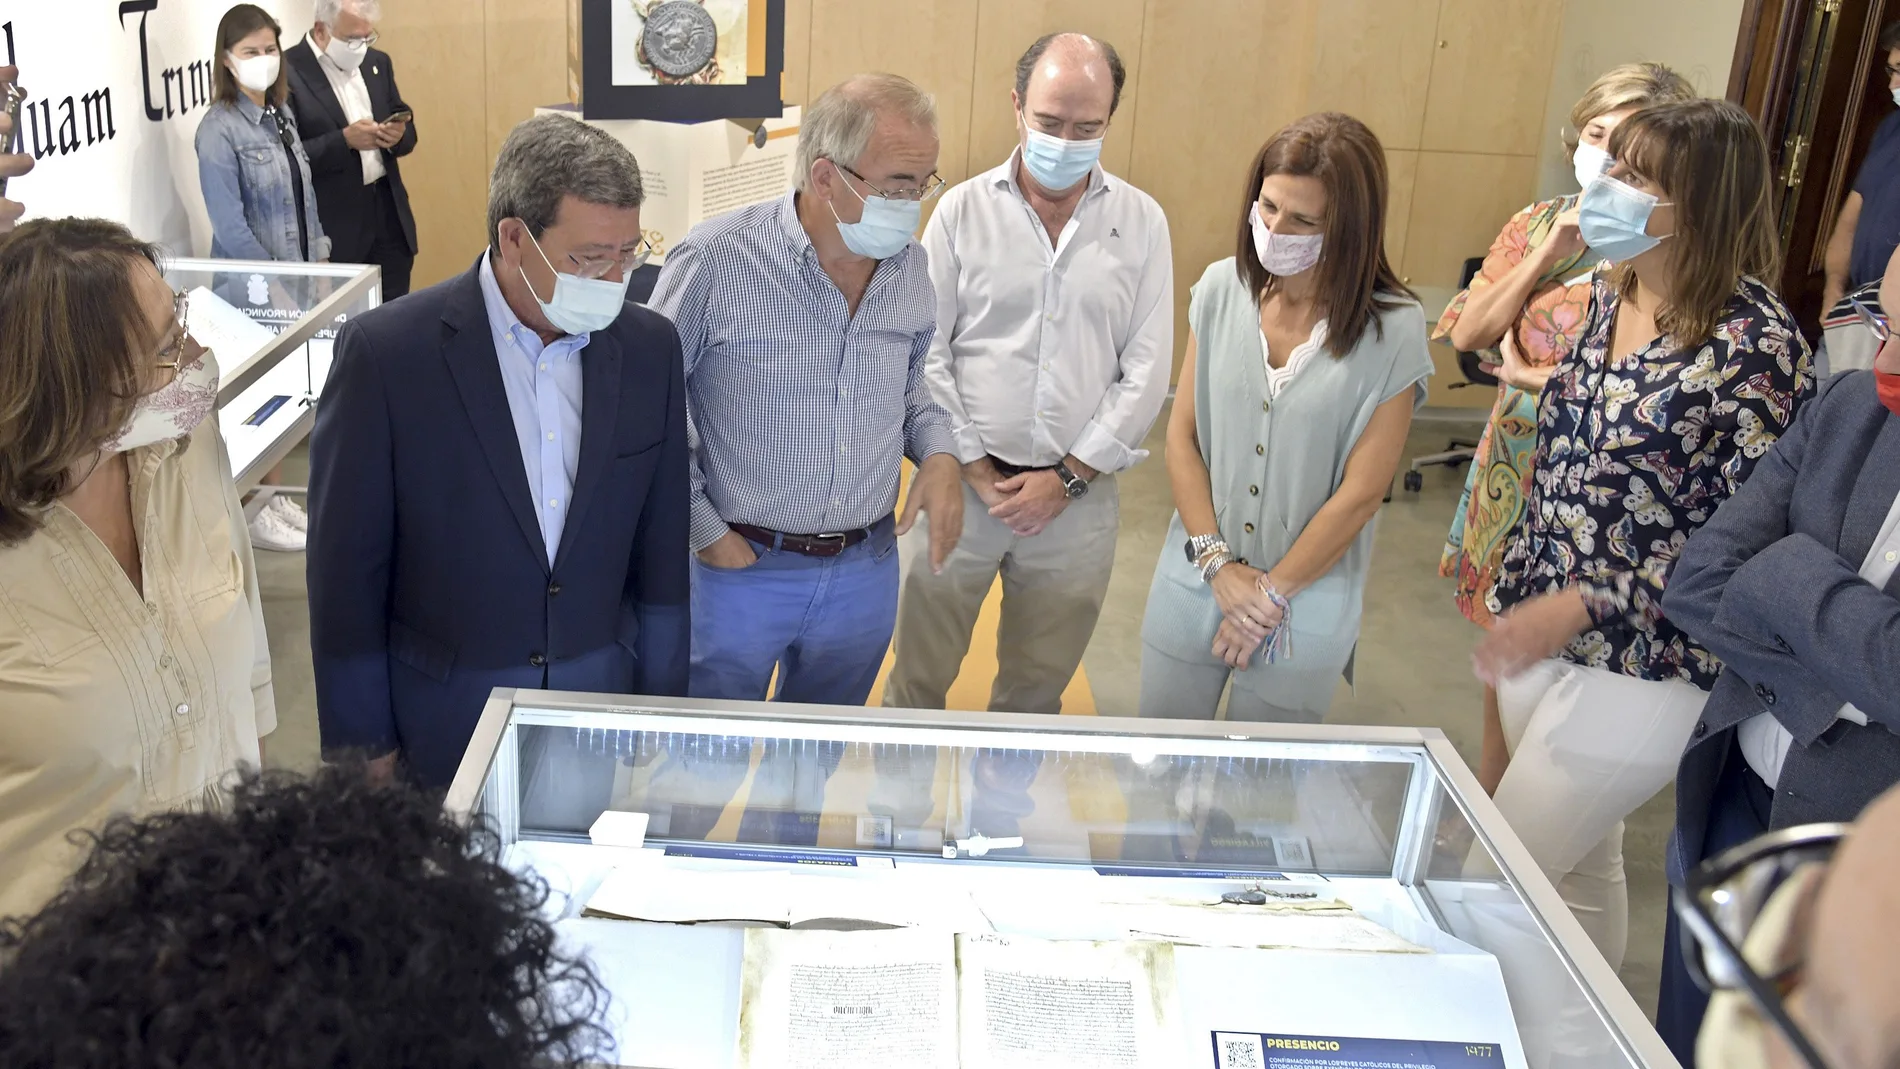 El presidente de la Diputación de Burgos, César Rico, inaugura la exposición "Cuando la costumbre se hace norma" en la Sala de Exposiciones del Consulado del Mar de Burgos